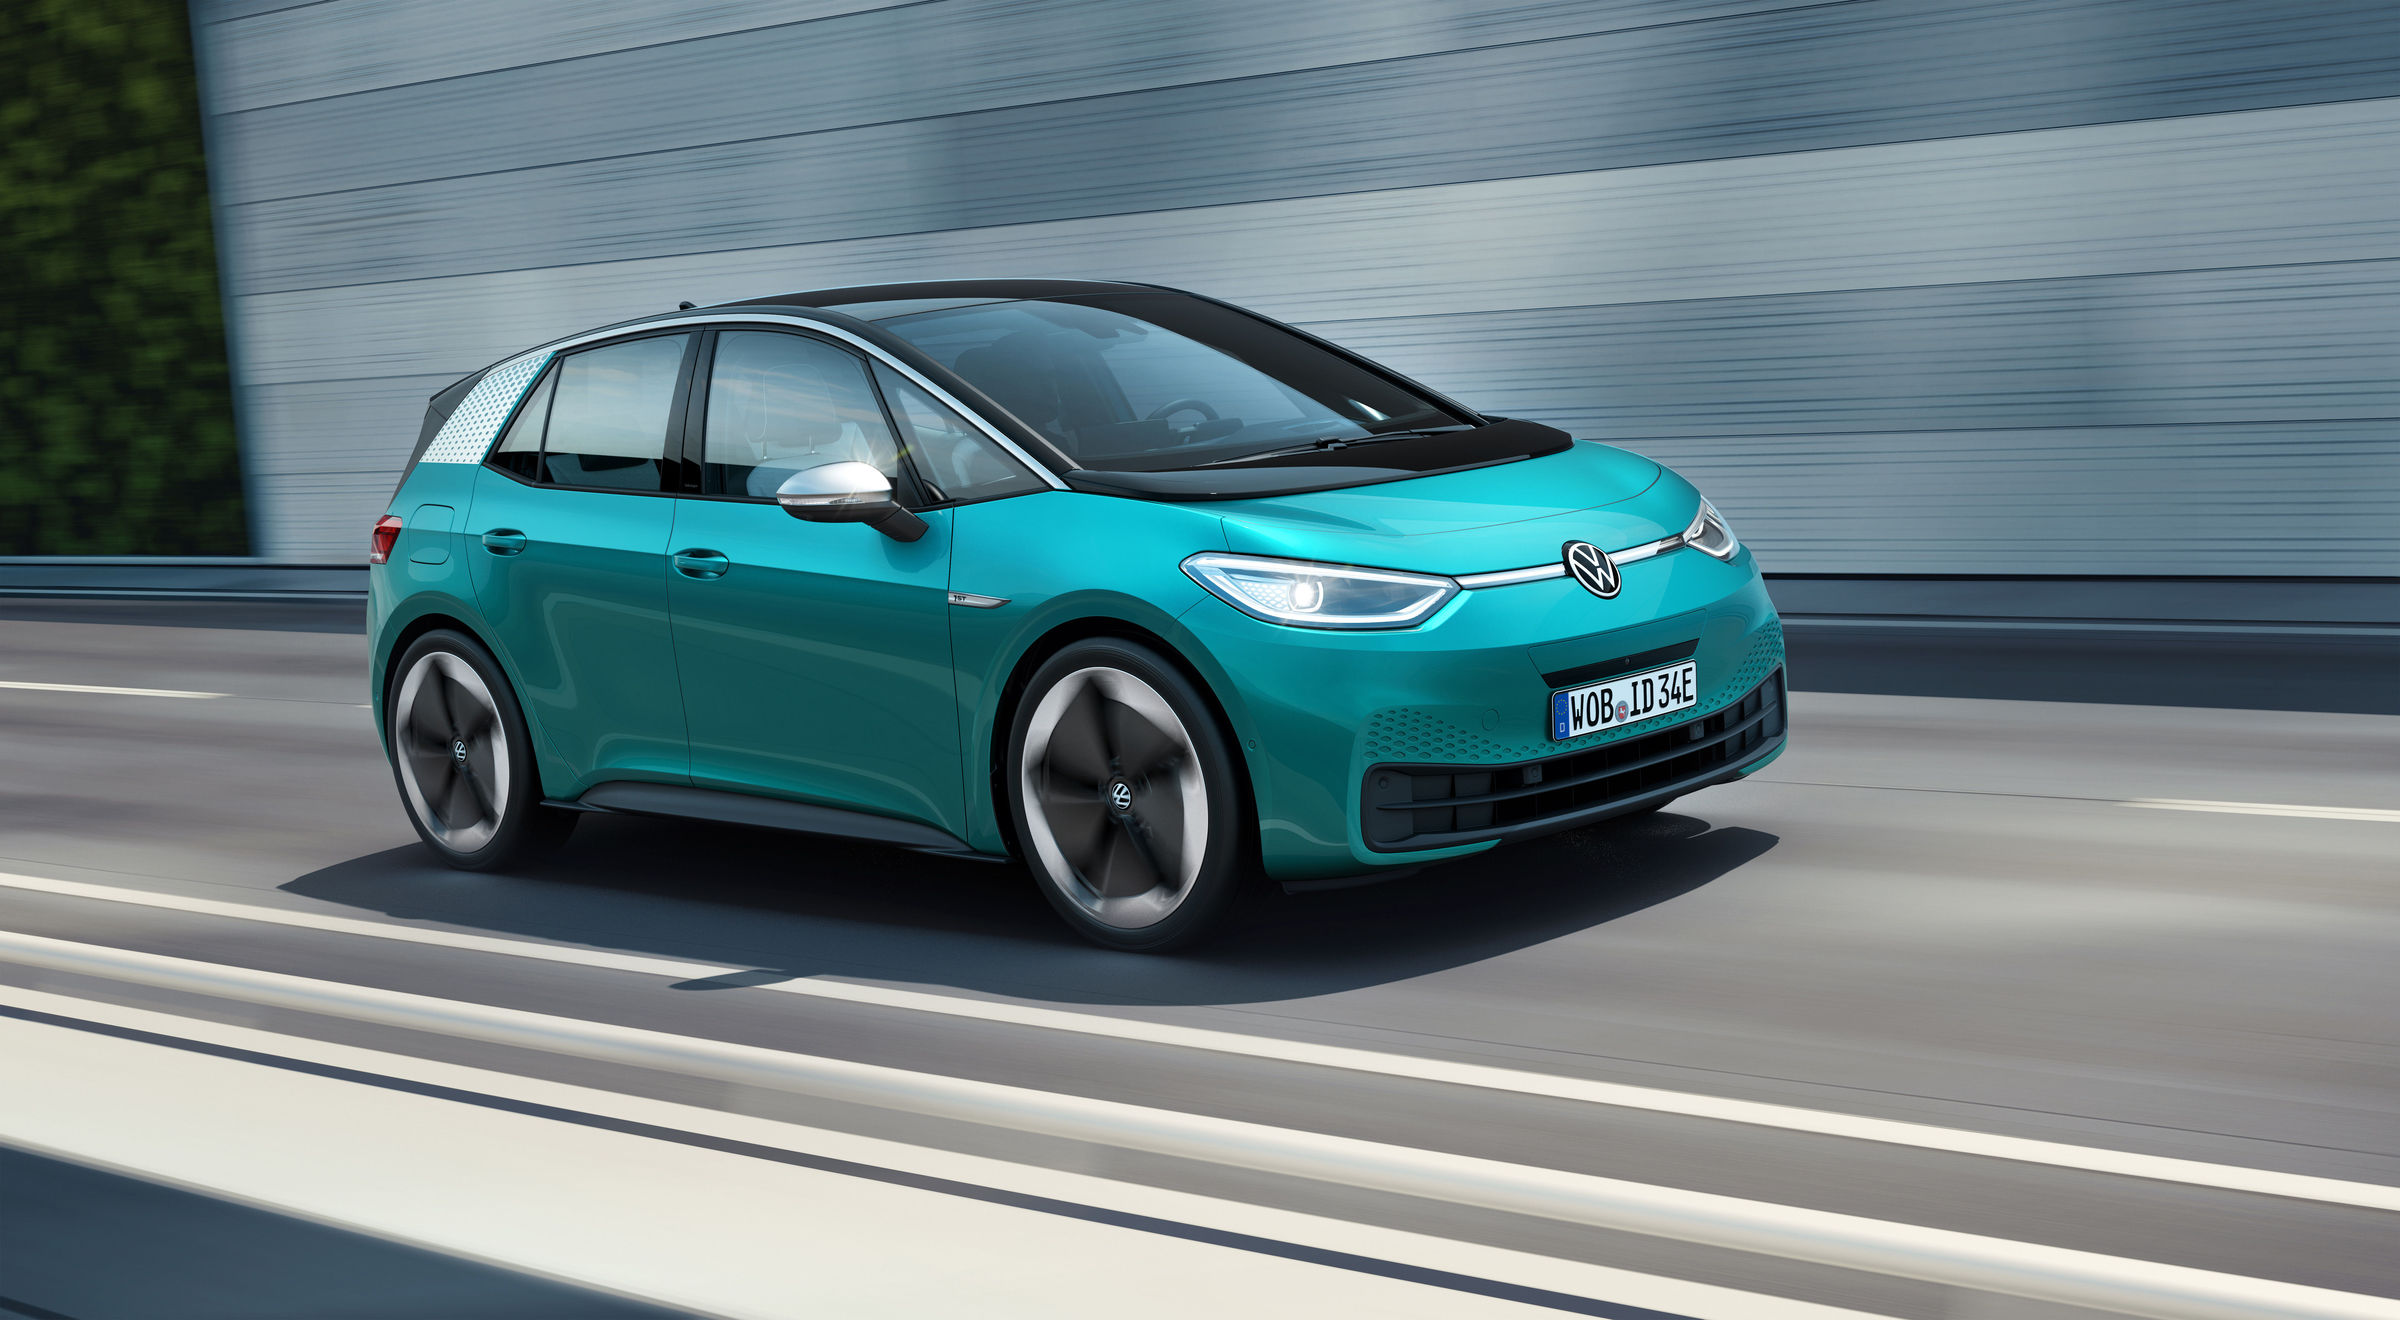 Volkswagen wil dat elektrische auto's in 2030 goed zijn voor 40 procent van zijn totale verkopen. Geen enkele grote autoproducent komt daar anno 2019 ook maar enigszins bij in de buurt.